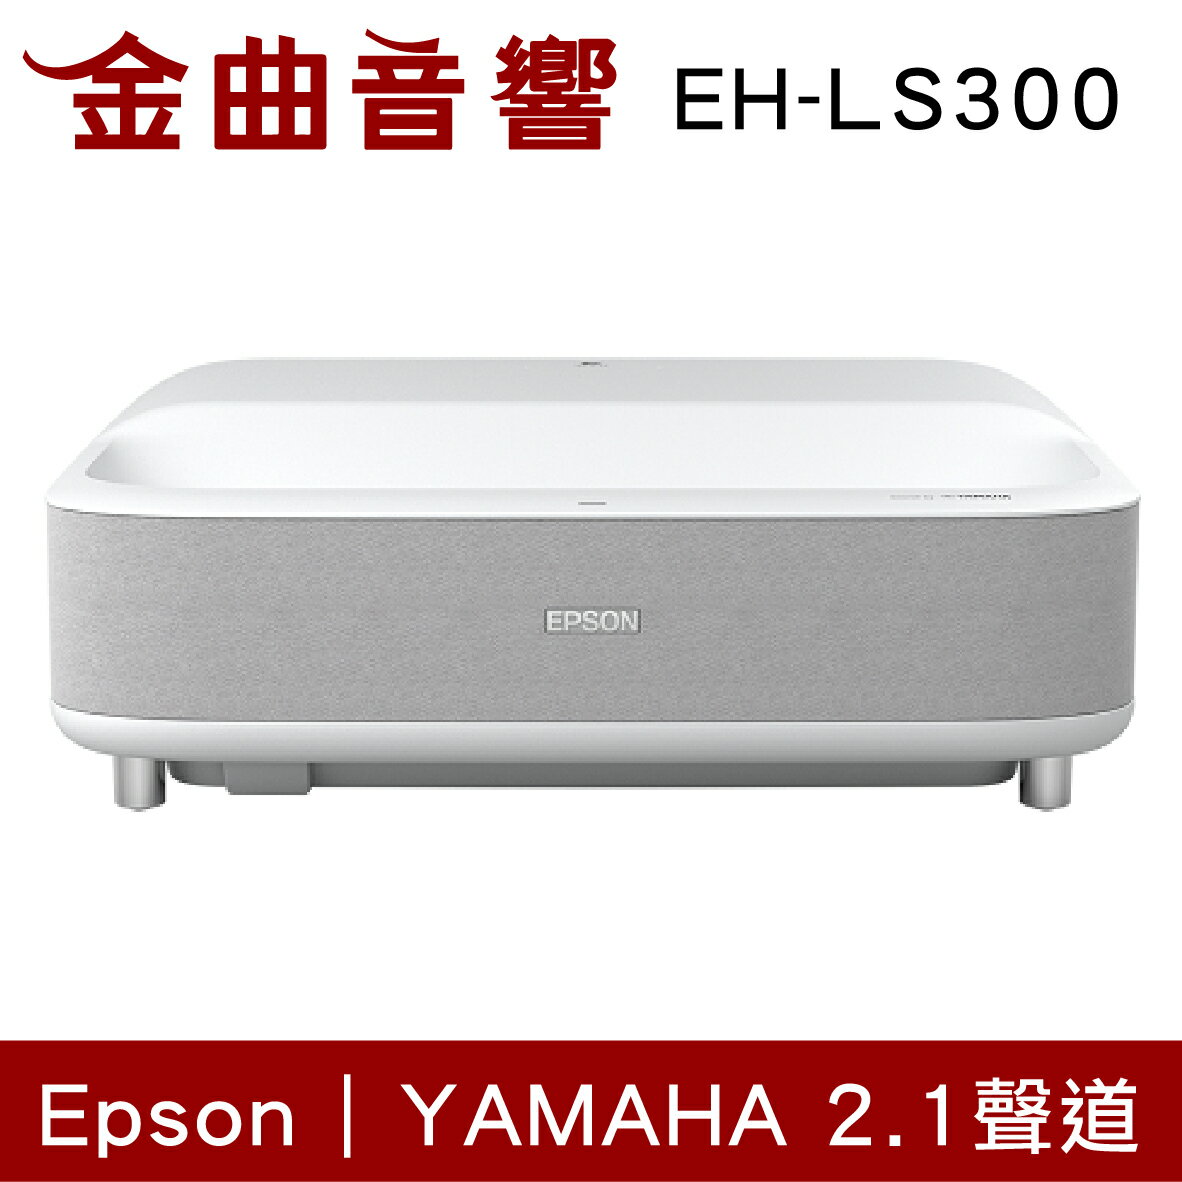 EPSON 愛普生 EH-LS300 白色 國民雷射大電視 3600流明 Full HD 投影機 | 金曲音響